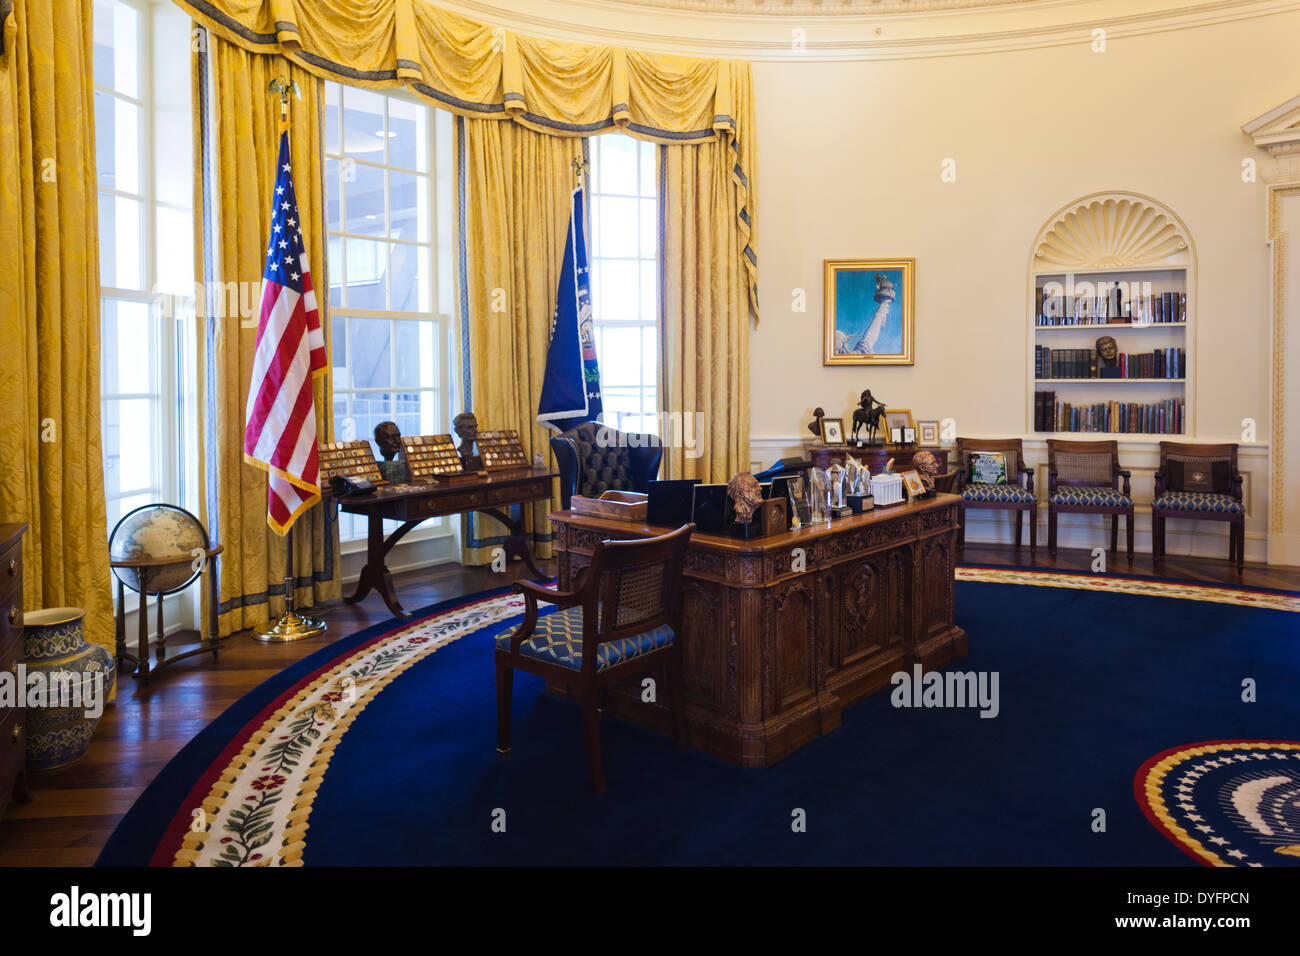 Stati Uniti d'America, Arkansas, Little Rock, William J. Clinton Presidential Library and Museum, replica dell'Ufficio Ovale della Casa Bianca Foto Stock